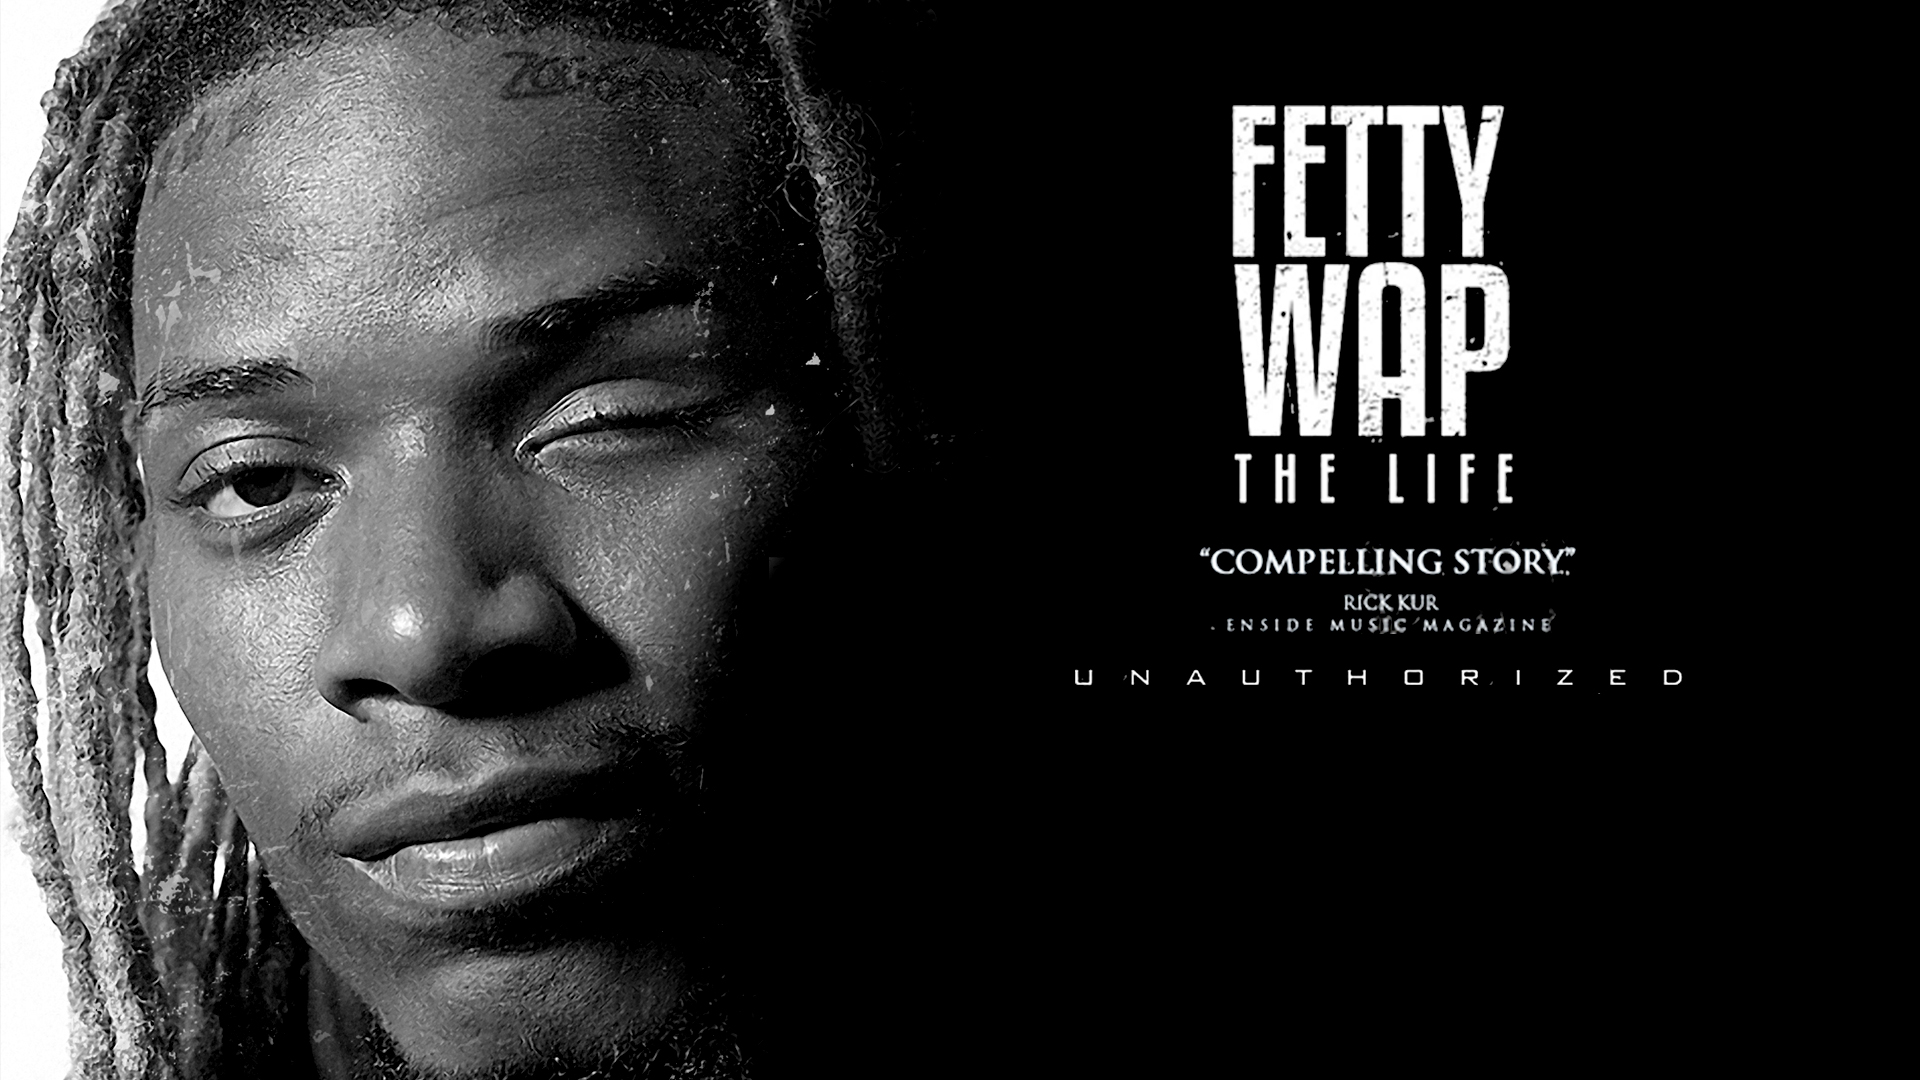 Fetty Wap – The Life